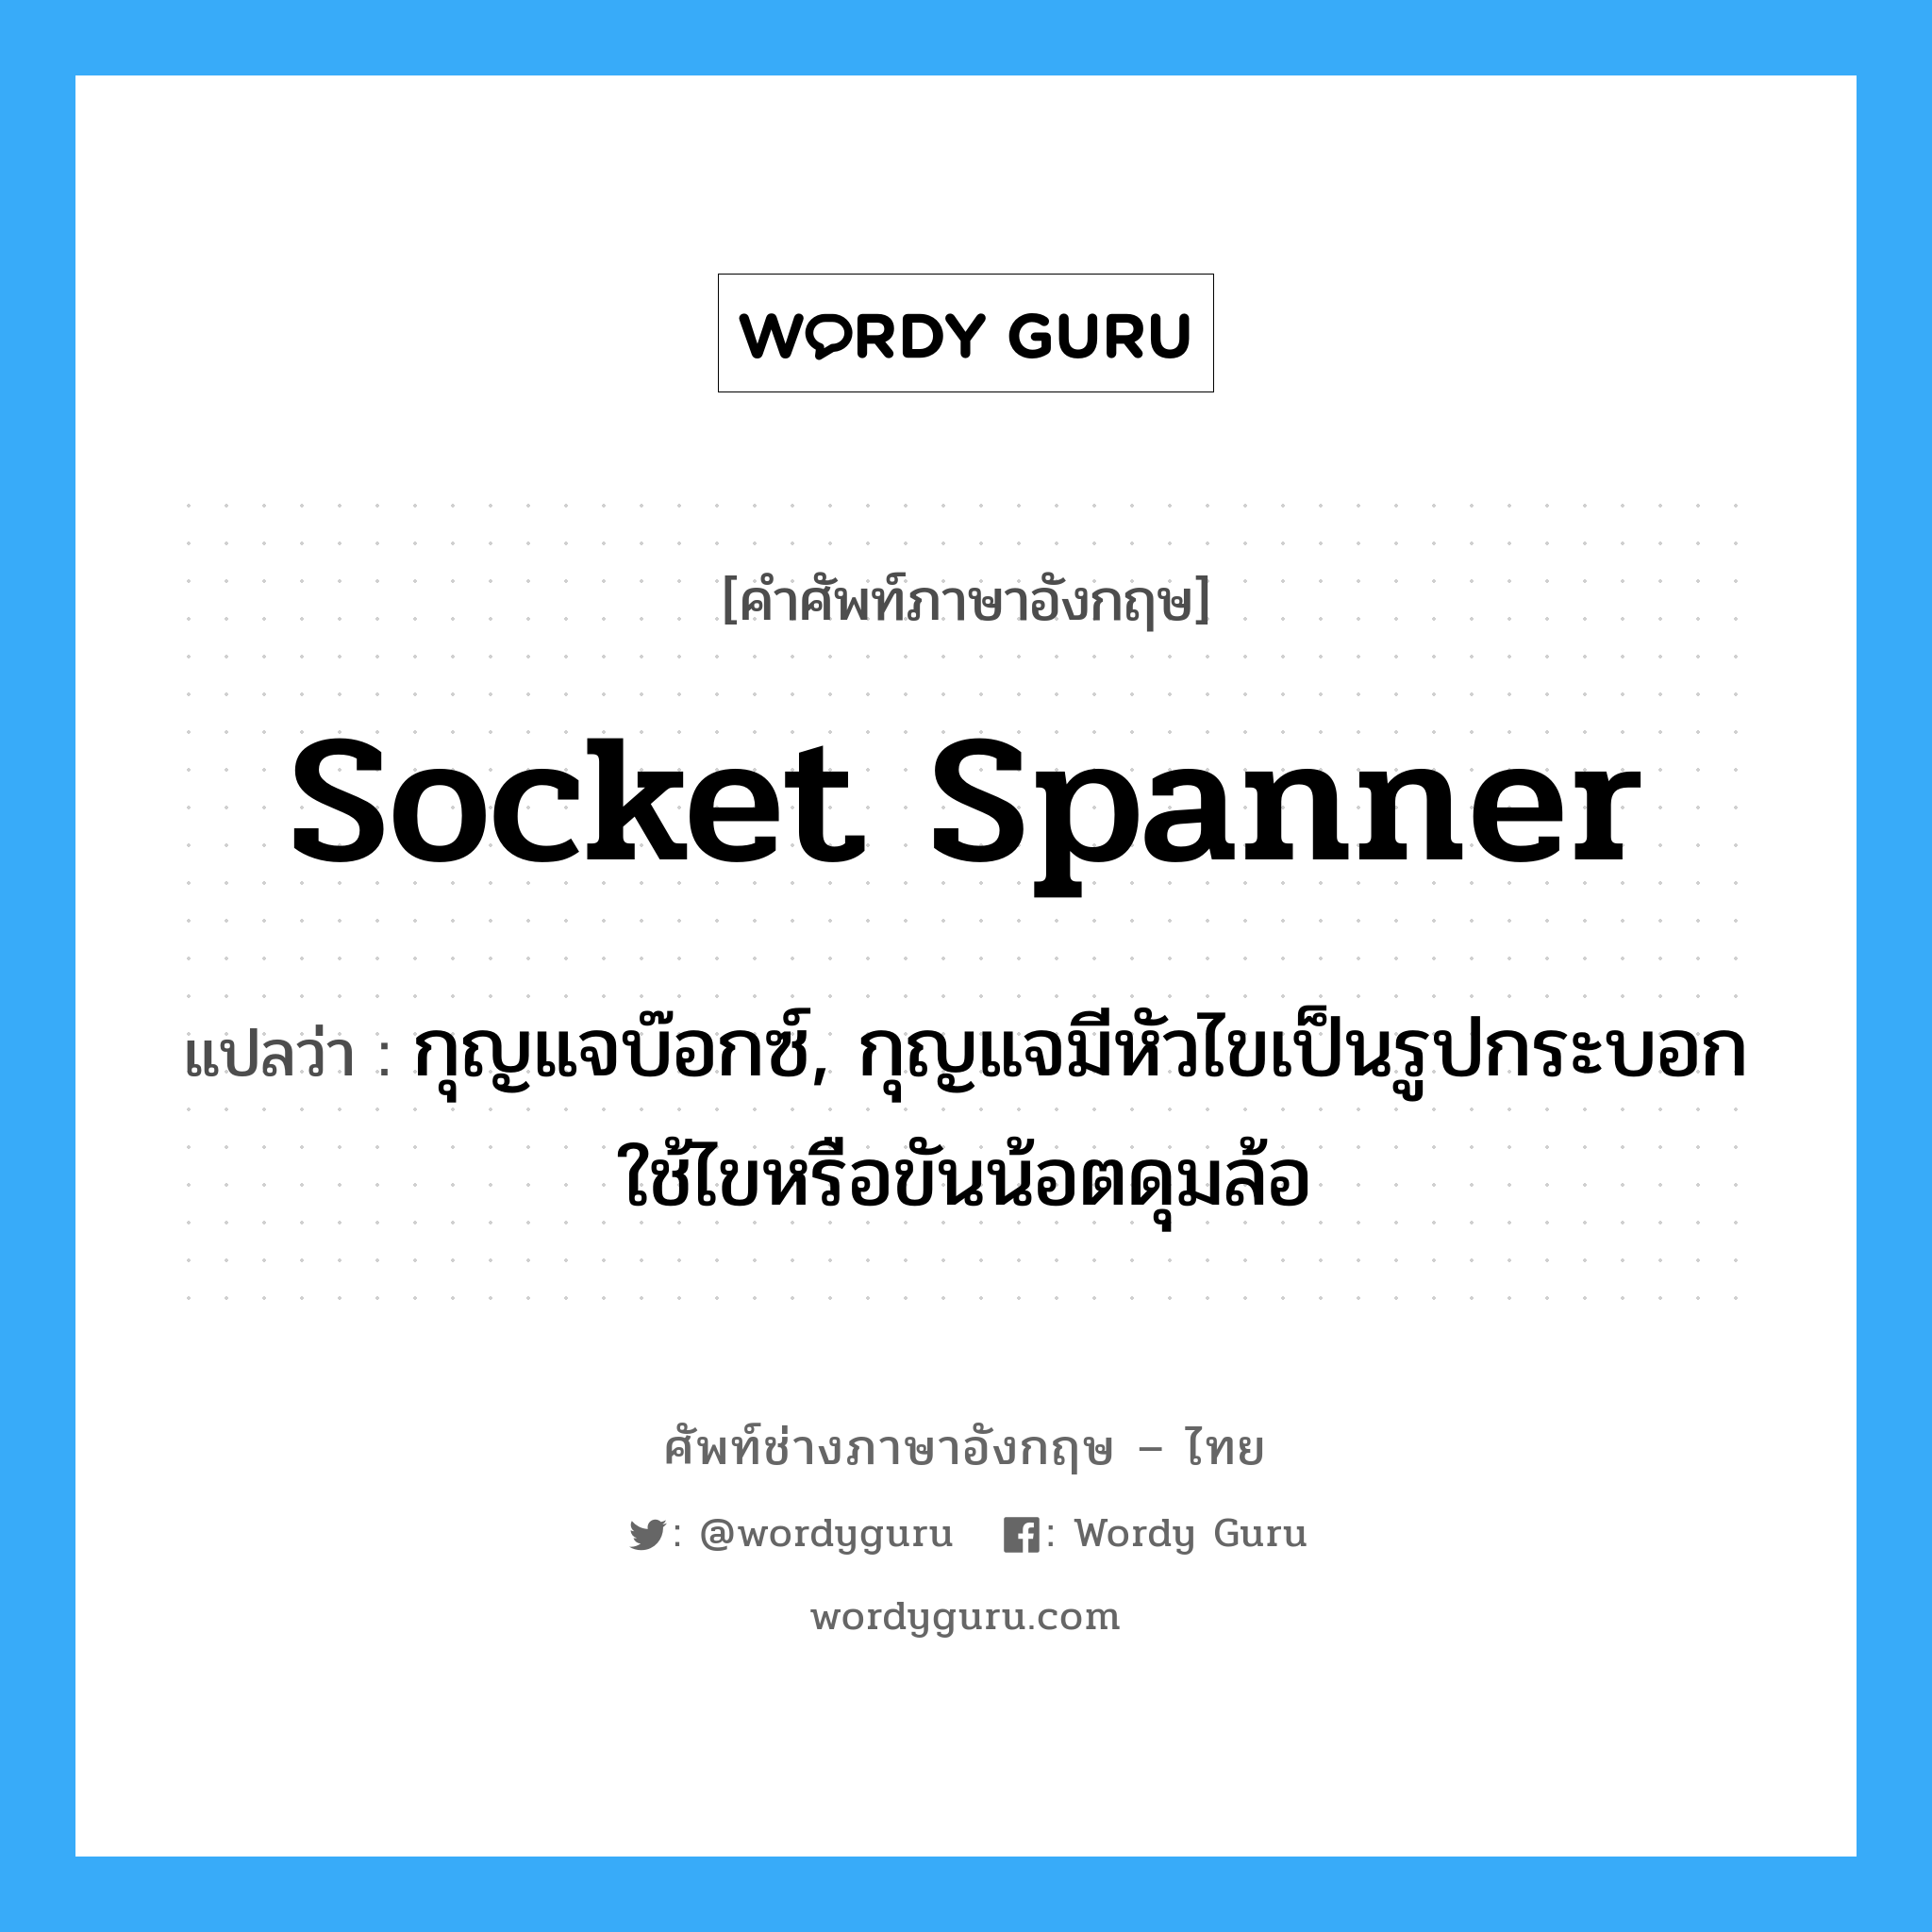 socket spanner แปลว่า?, คำศัพท์ช่างภาษาอังกฤษ - ไทย socket spanner คำศัพท์ภาษาอังกฤษ socket spanner แปลว่า กุญแจบ๊อกซ์, กุญแจมีหัวไขเป็นรูปกระบอกใช้ไขหรือขันน้อตดุมล้อ